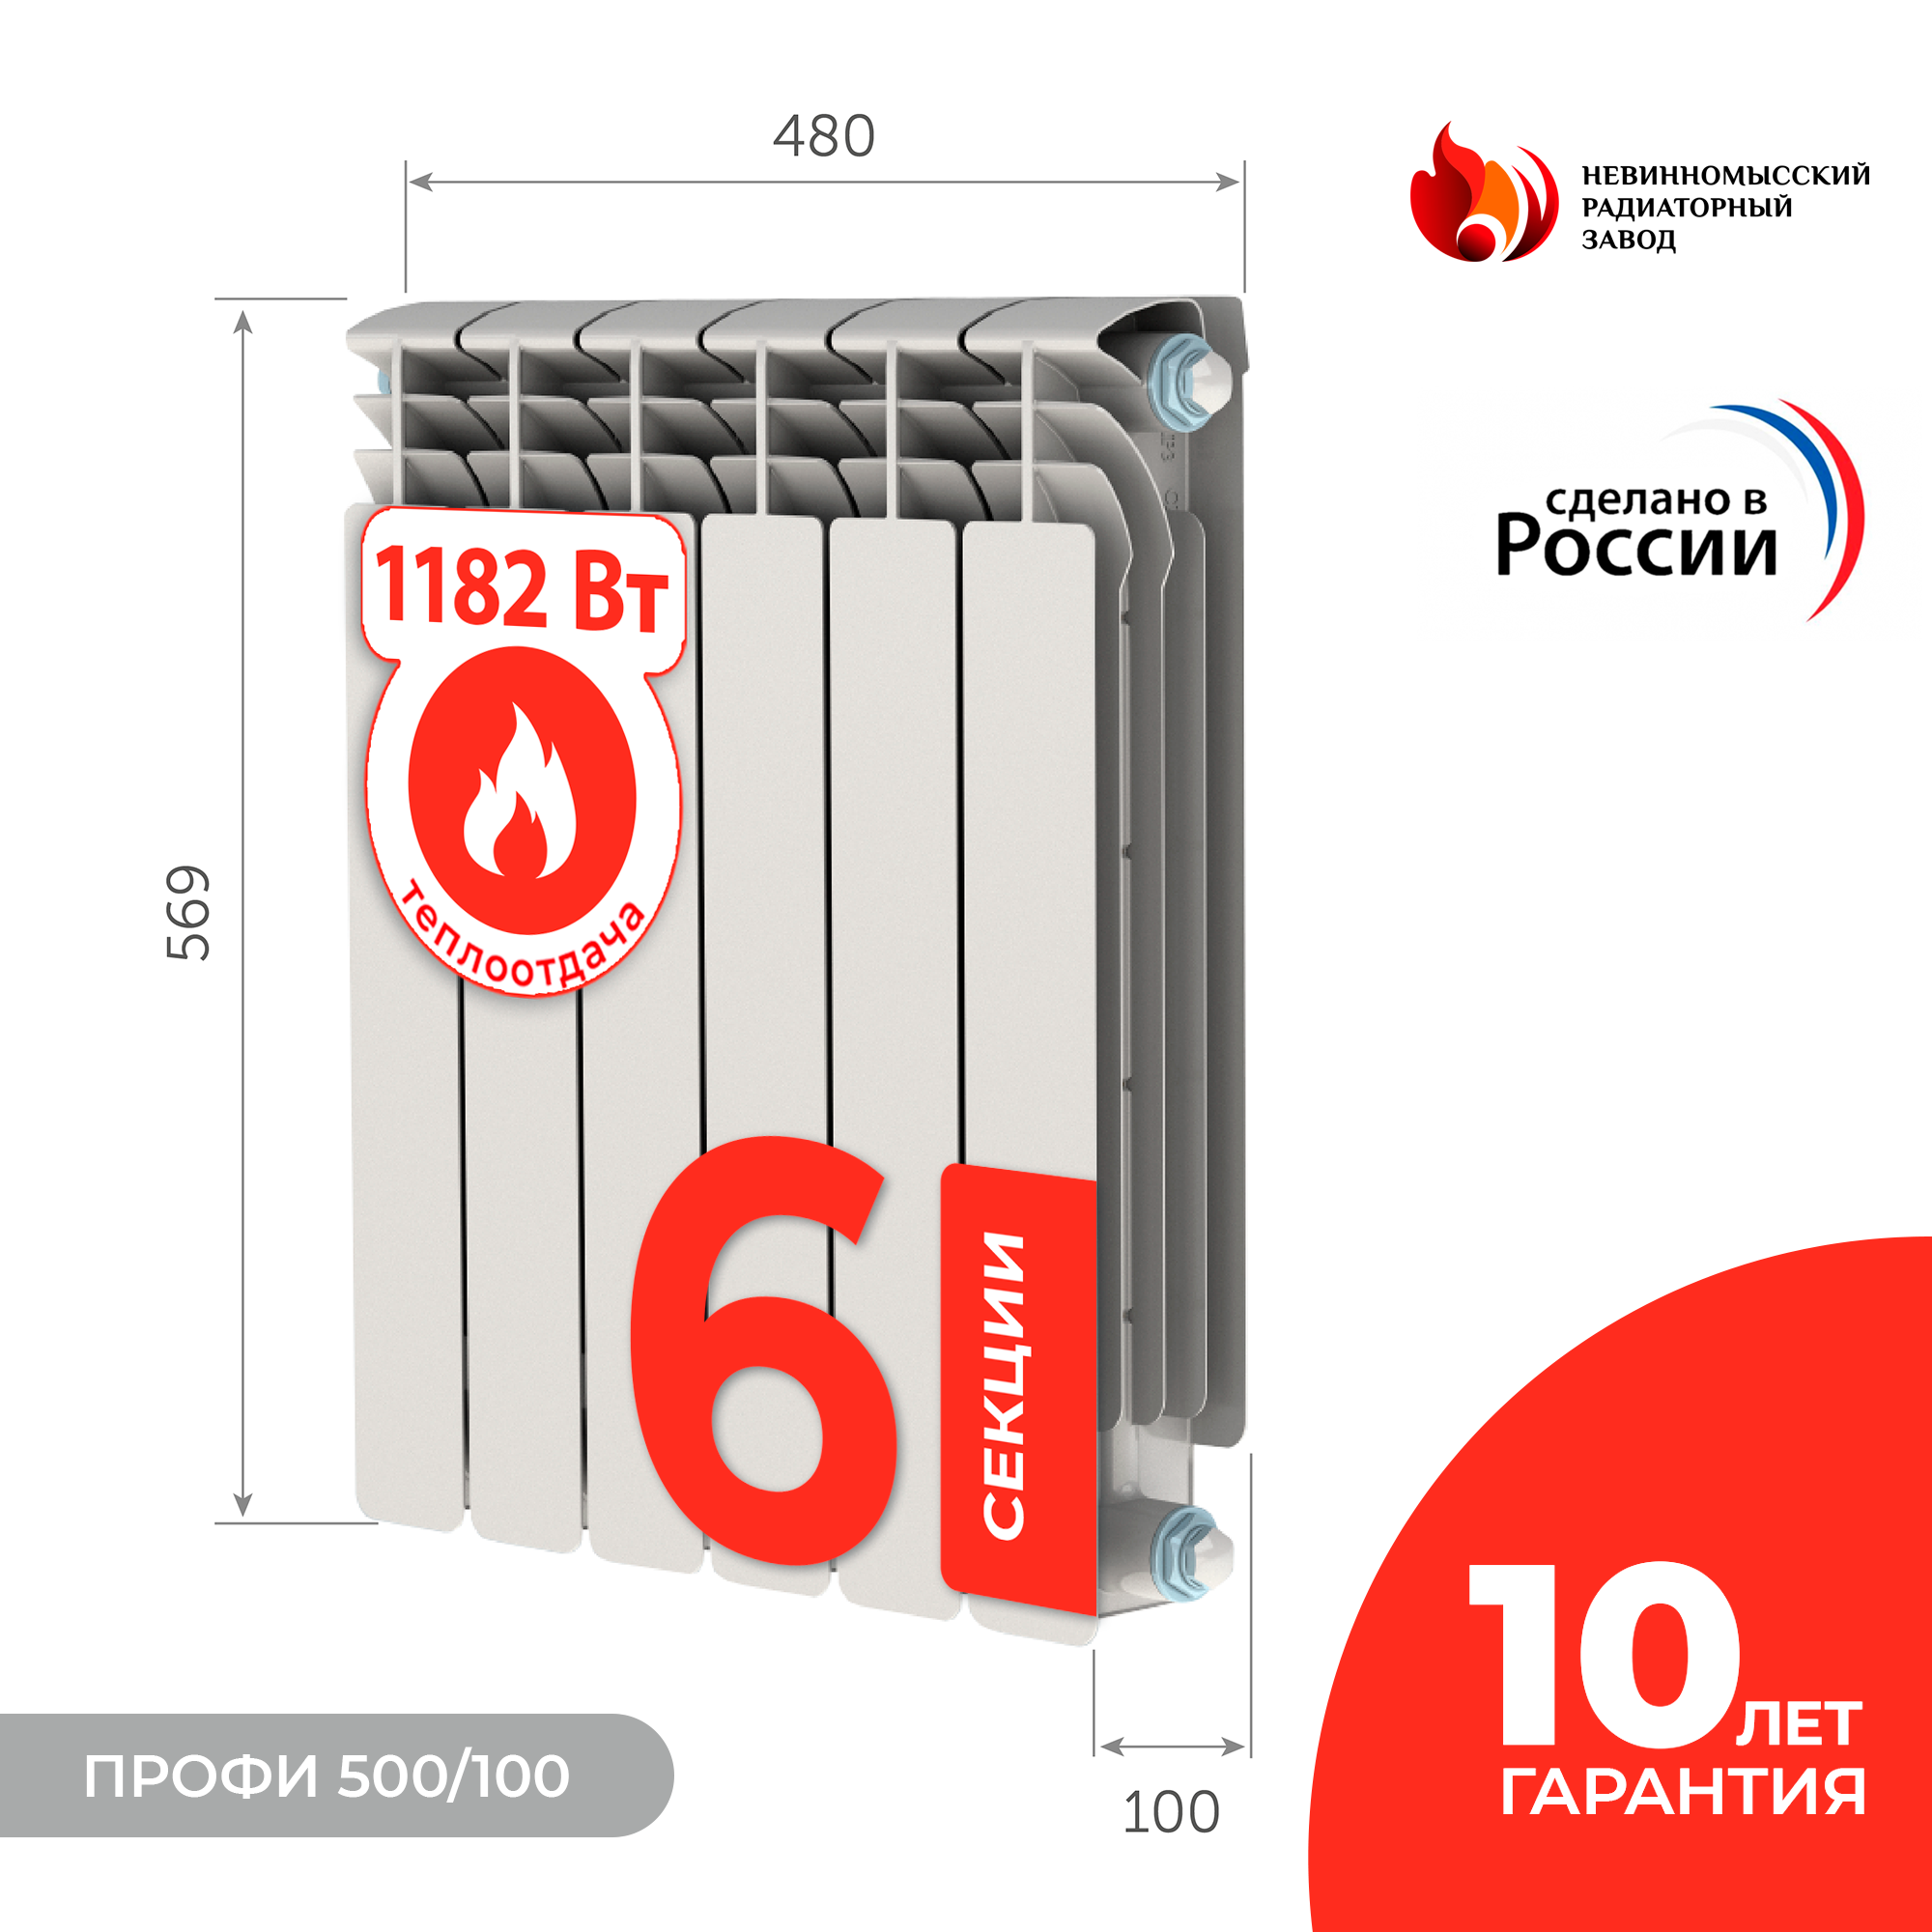  Невинномысский радиаторный завод Профи 500/100 6 секций .